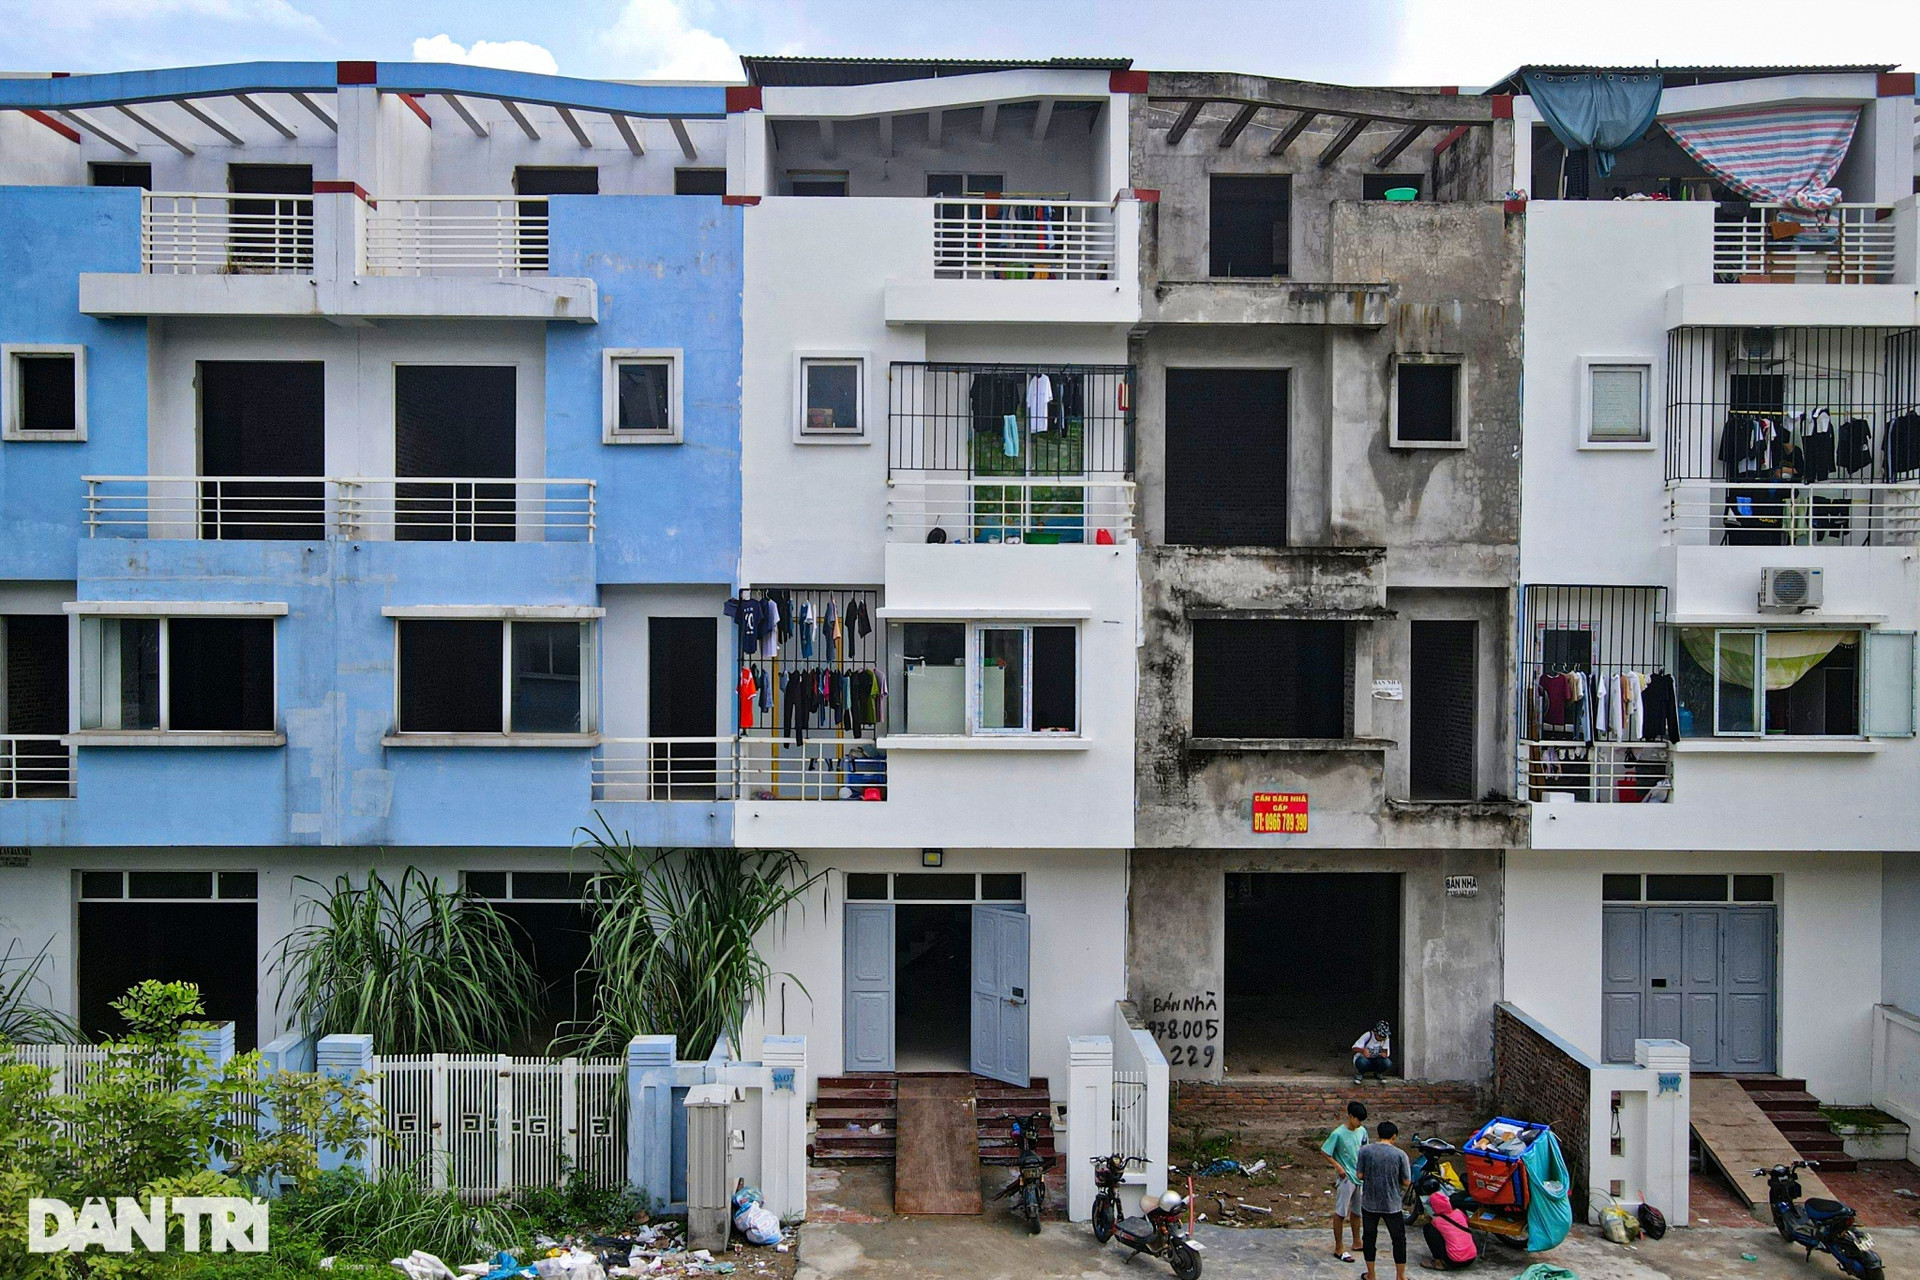 Cuộc sống thuê trọ trong các biệt thự triệu USD bỏ hoang ở Hà Nội - 3